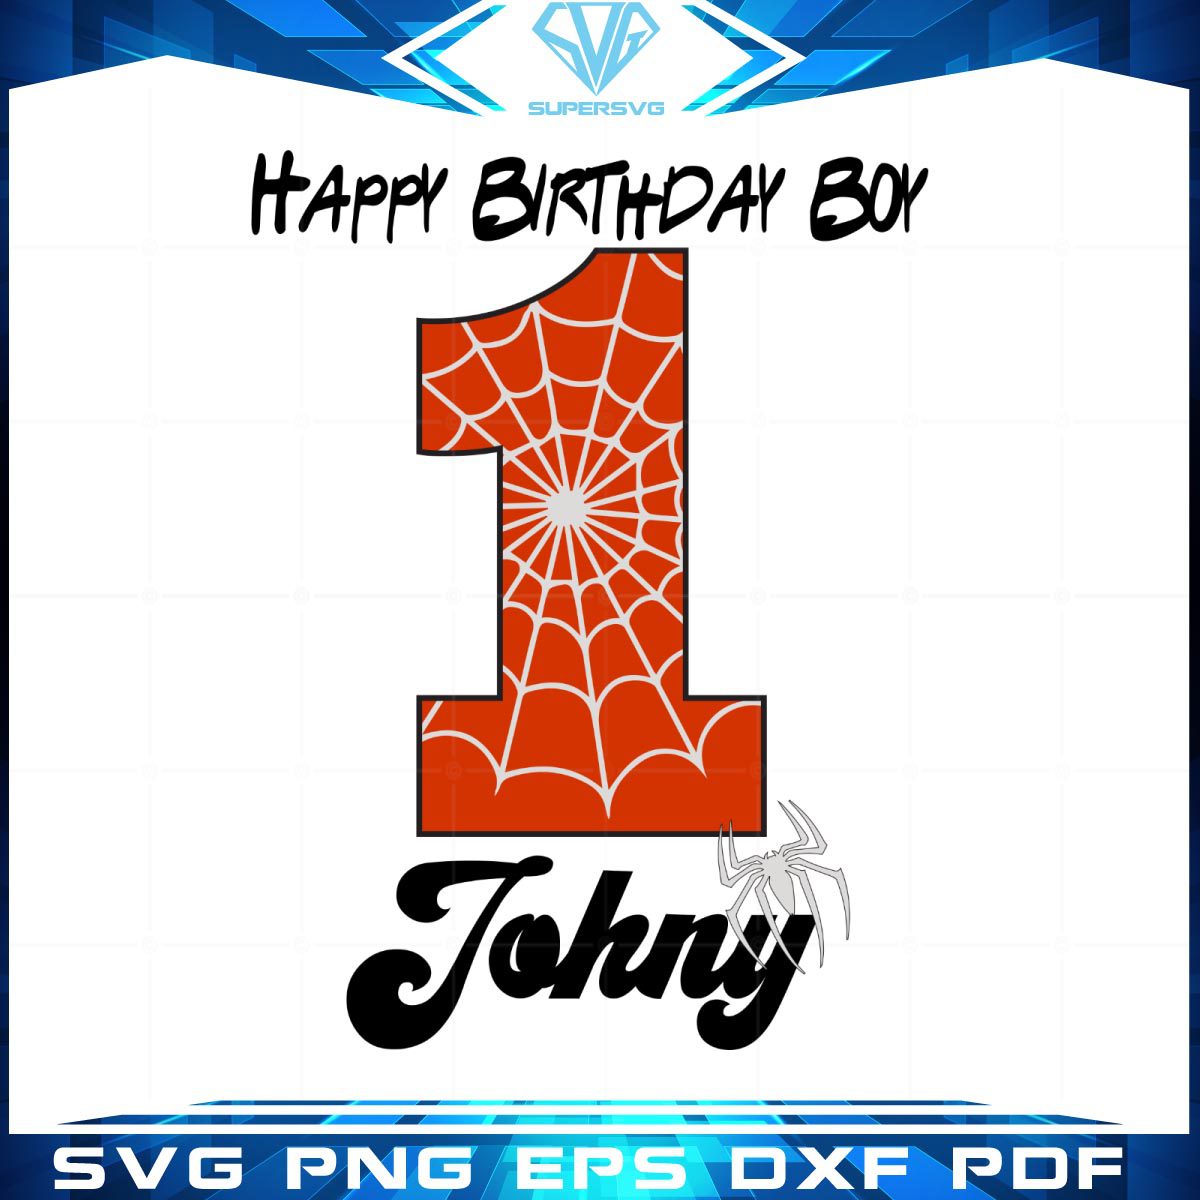 Happy birthday boy 1 year old spiderman SVG cutting files